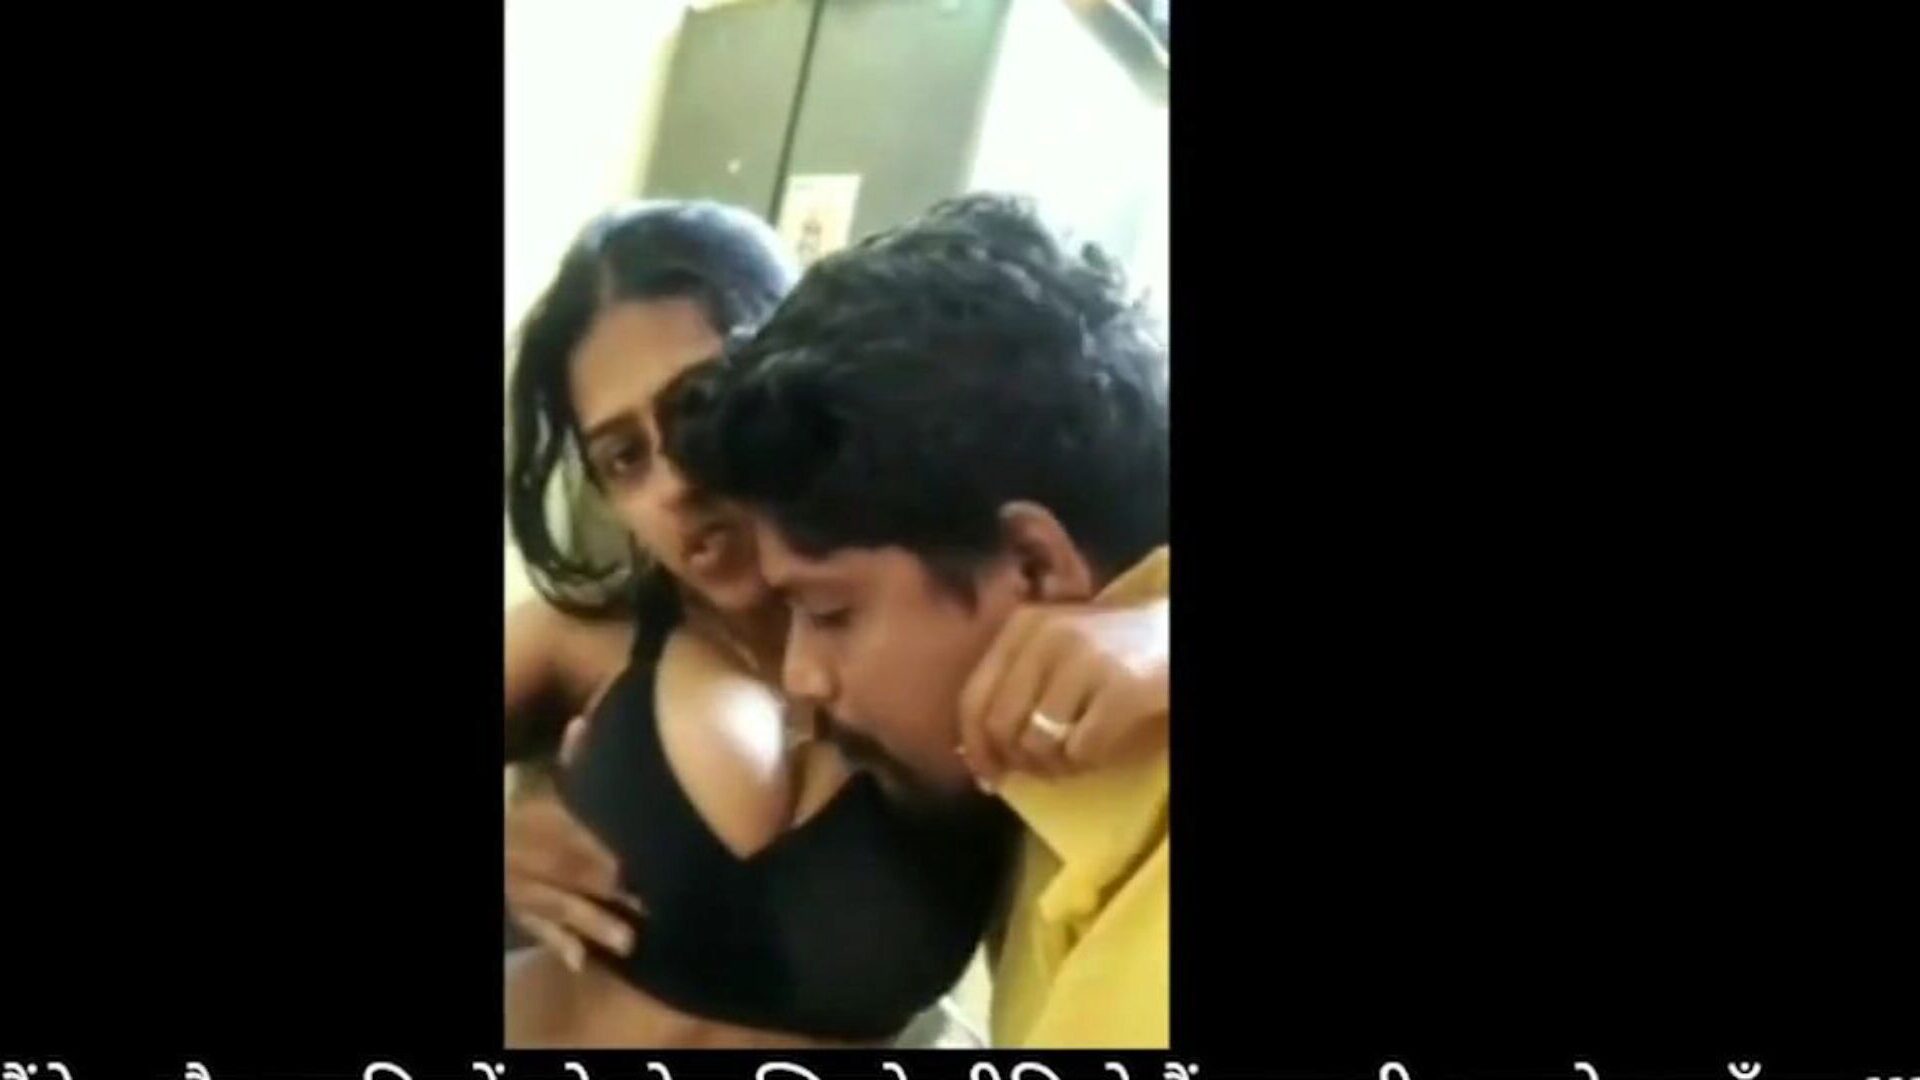 bhabhi devar domaća seks zabava tijekom zaključavanja: besplatni hd porno fa gledati bhabhi devar kućna seks zabava tijekom epizode zaključavanja na xhamster - konačna arhiva besplatnog indijskog besplatnog kućnog seksa hd xxx pornografija tube vids